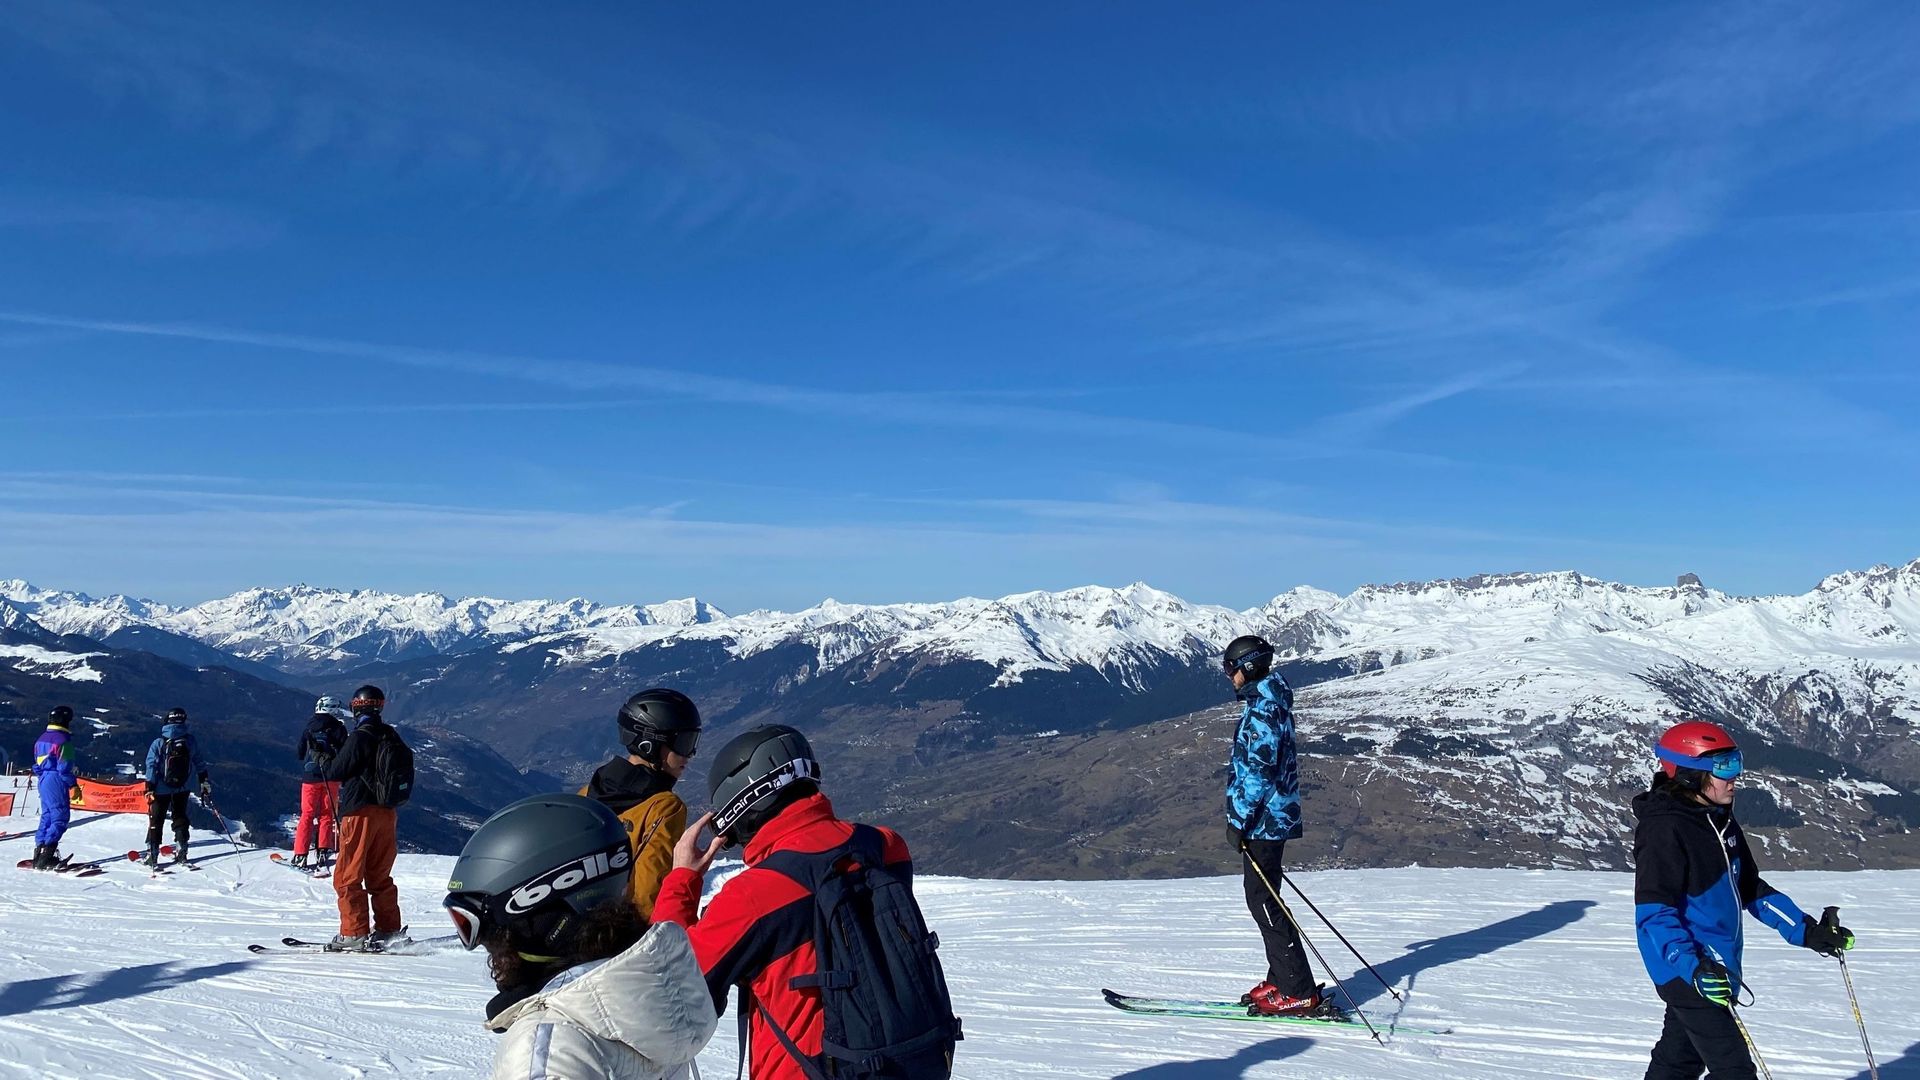 La vallée de la Tarentaise, en contrebas du domaine skiable des Arcs, souffre du manque de neige